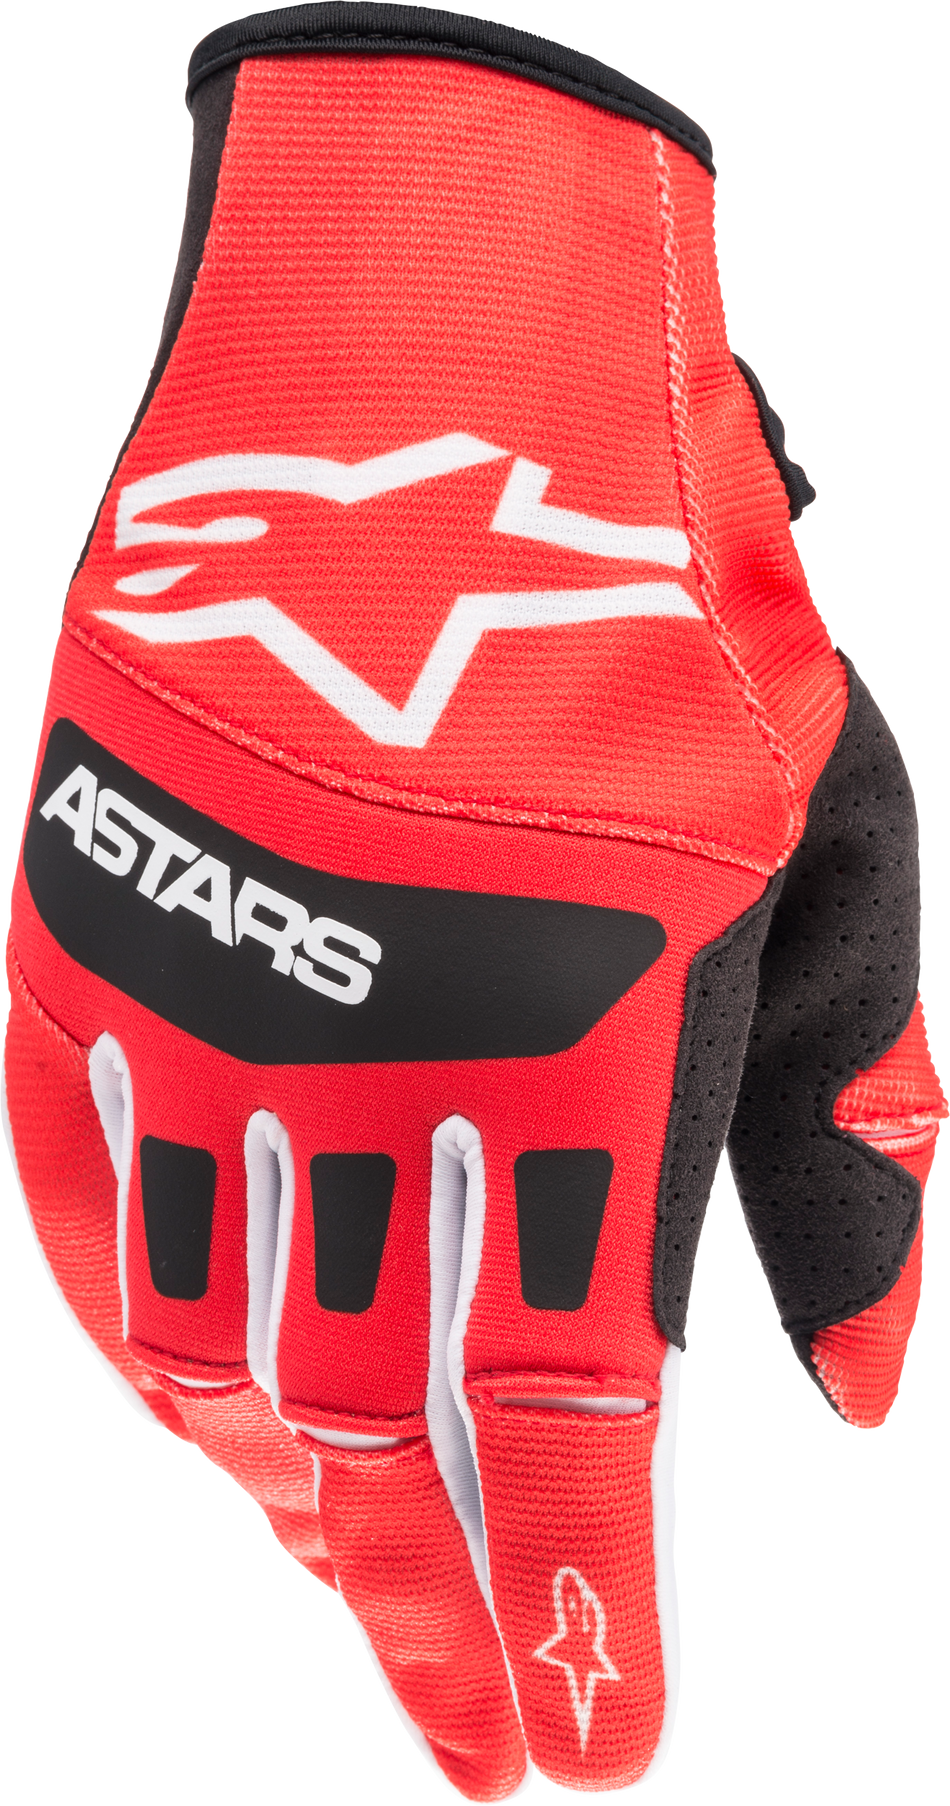 ALPINESTARS Techstar Gloves Bright Red/Black Md 3561022-3031-M